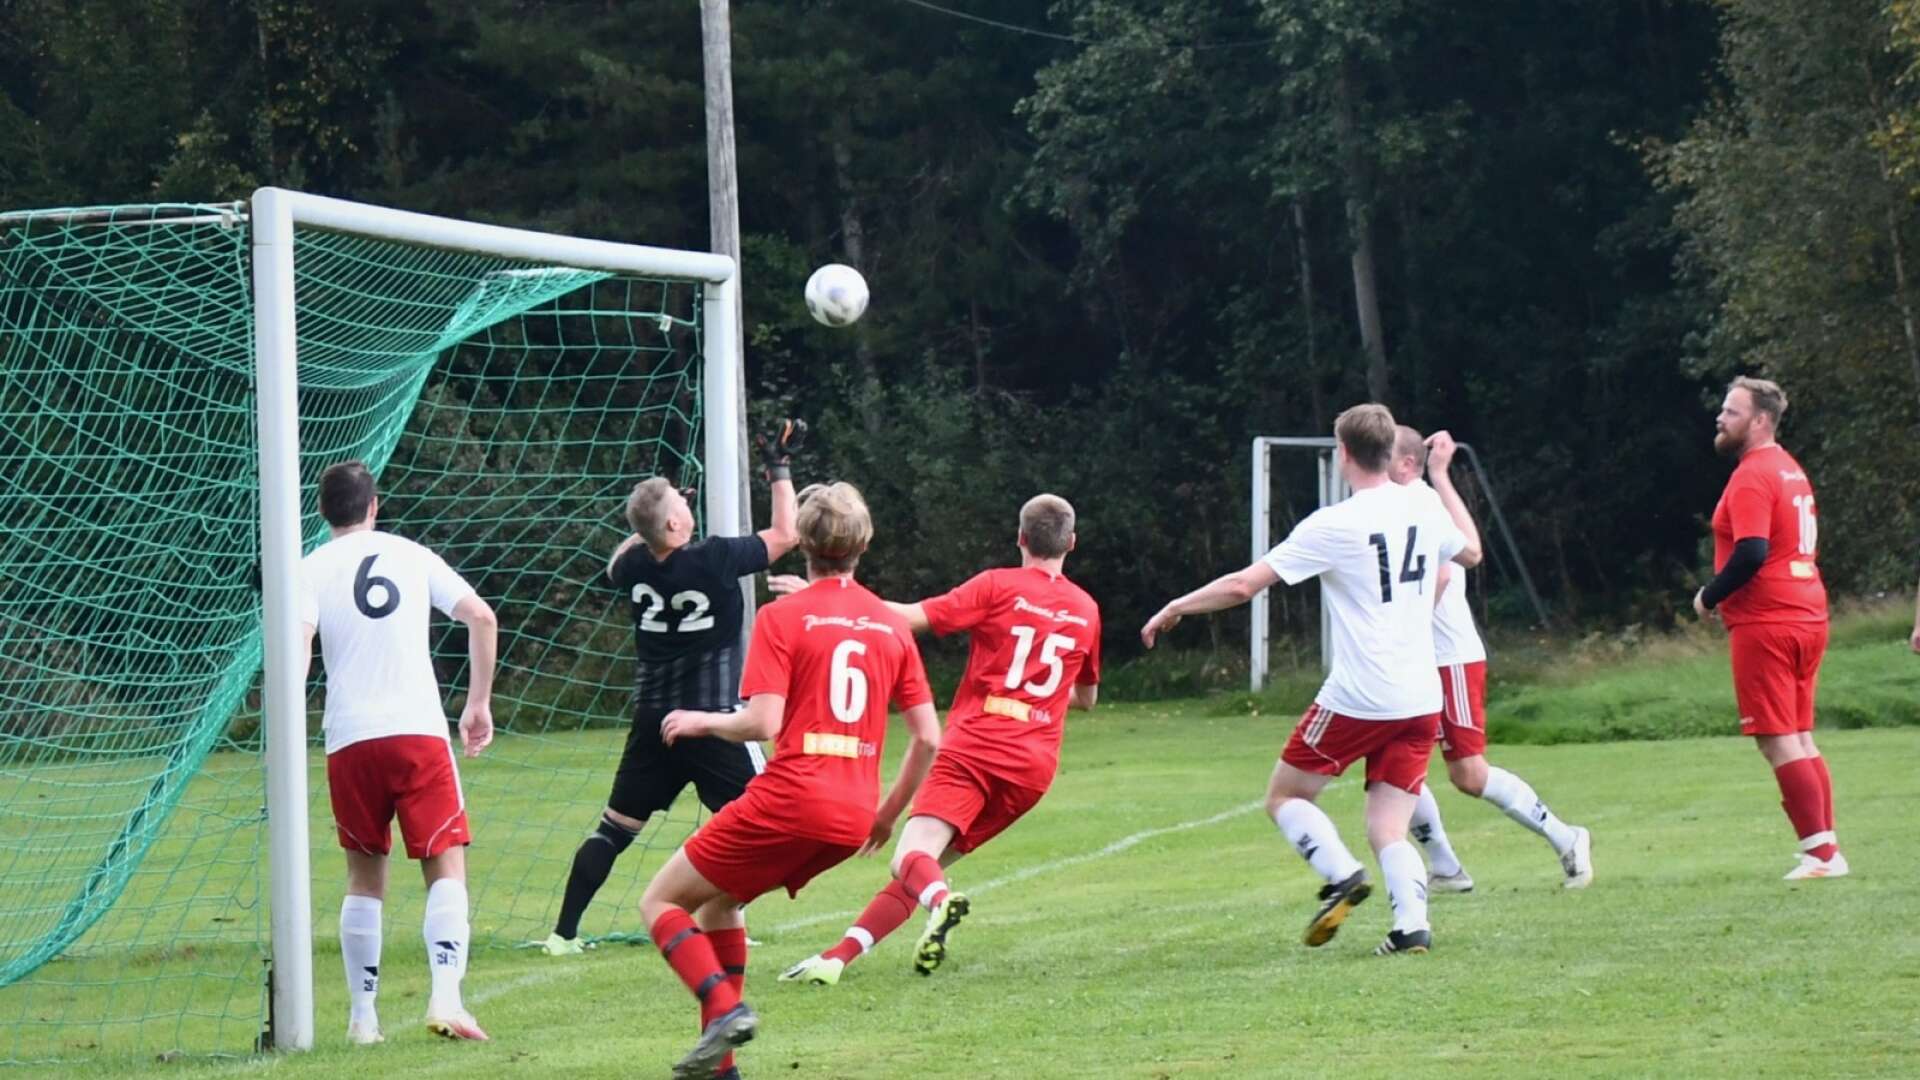 ÄFF U:s målvakt ledde sitt lag till seger i bortamatchen mot Bäckalund som därmed gick miste om viktiga poäng i tabelltoppen.